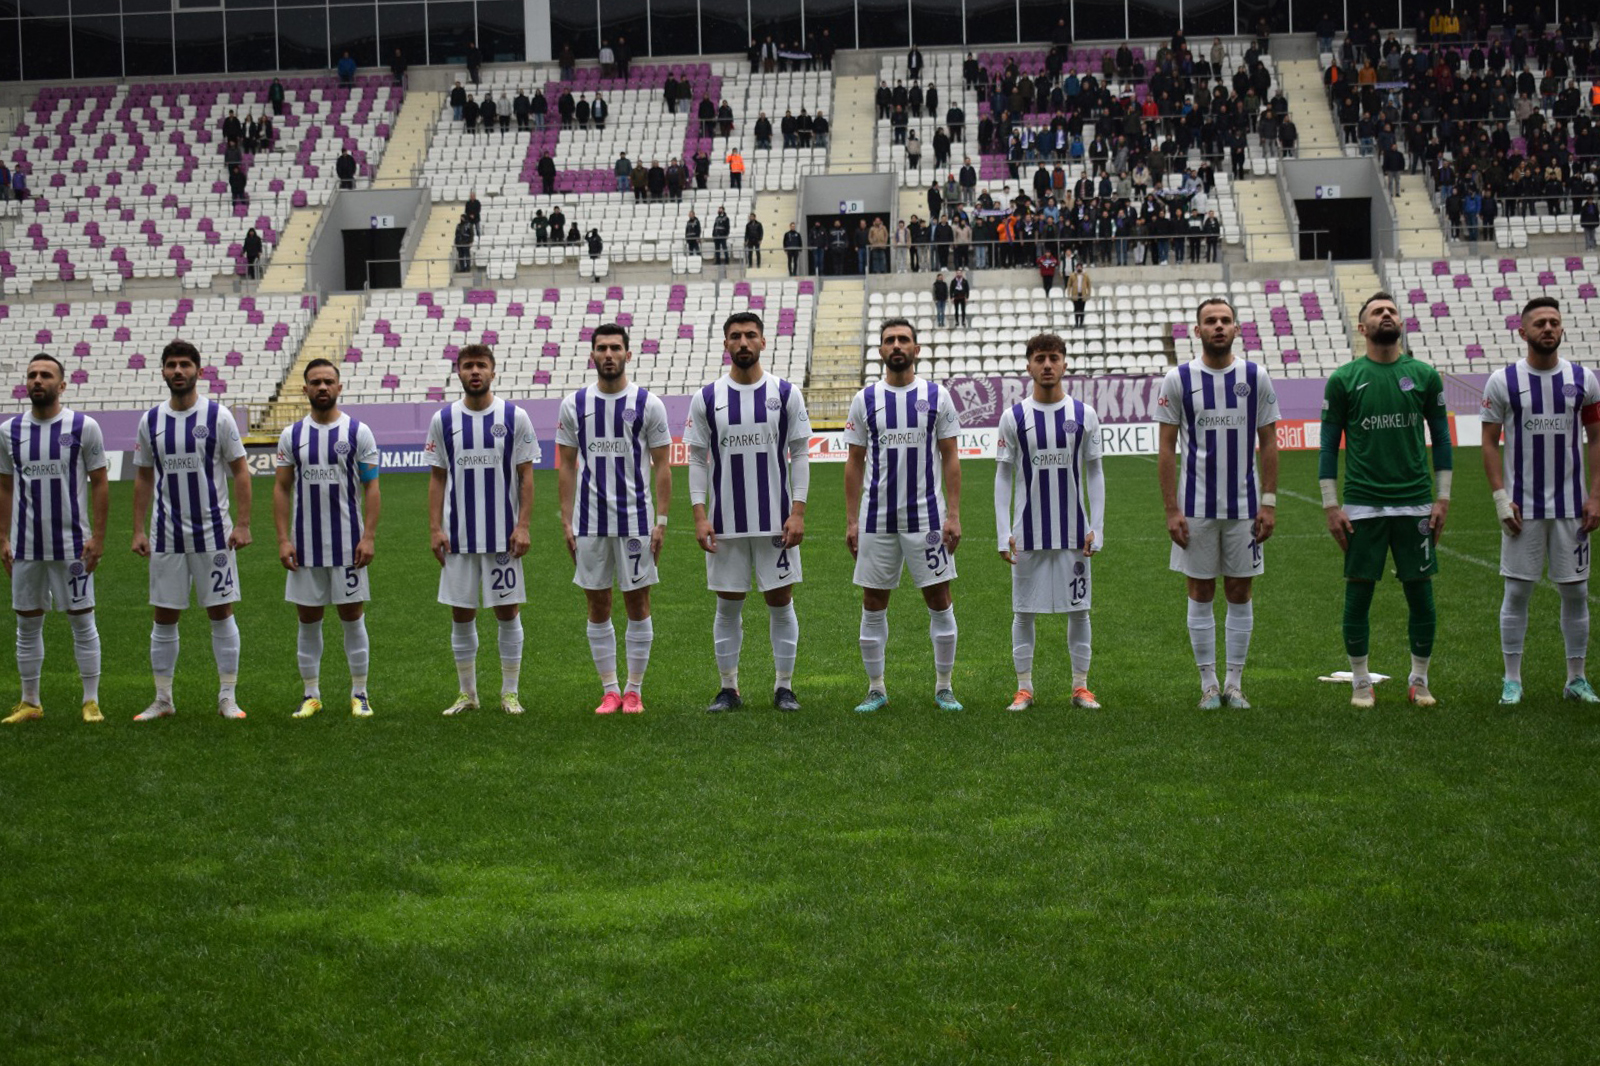  52 Orduspor Futbol Kulübü’nün Grubu’nda Hangi Takımların Play-Off Şansı Var?